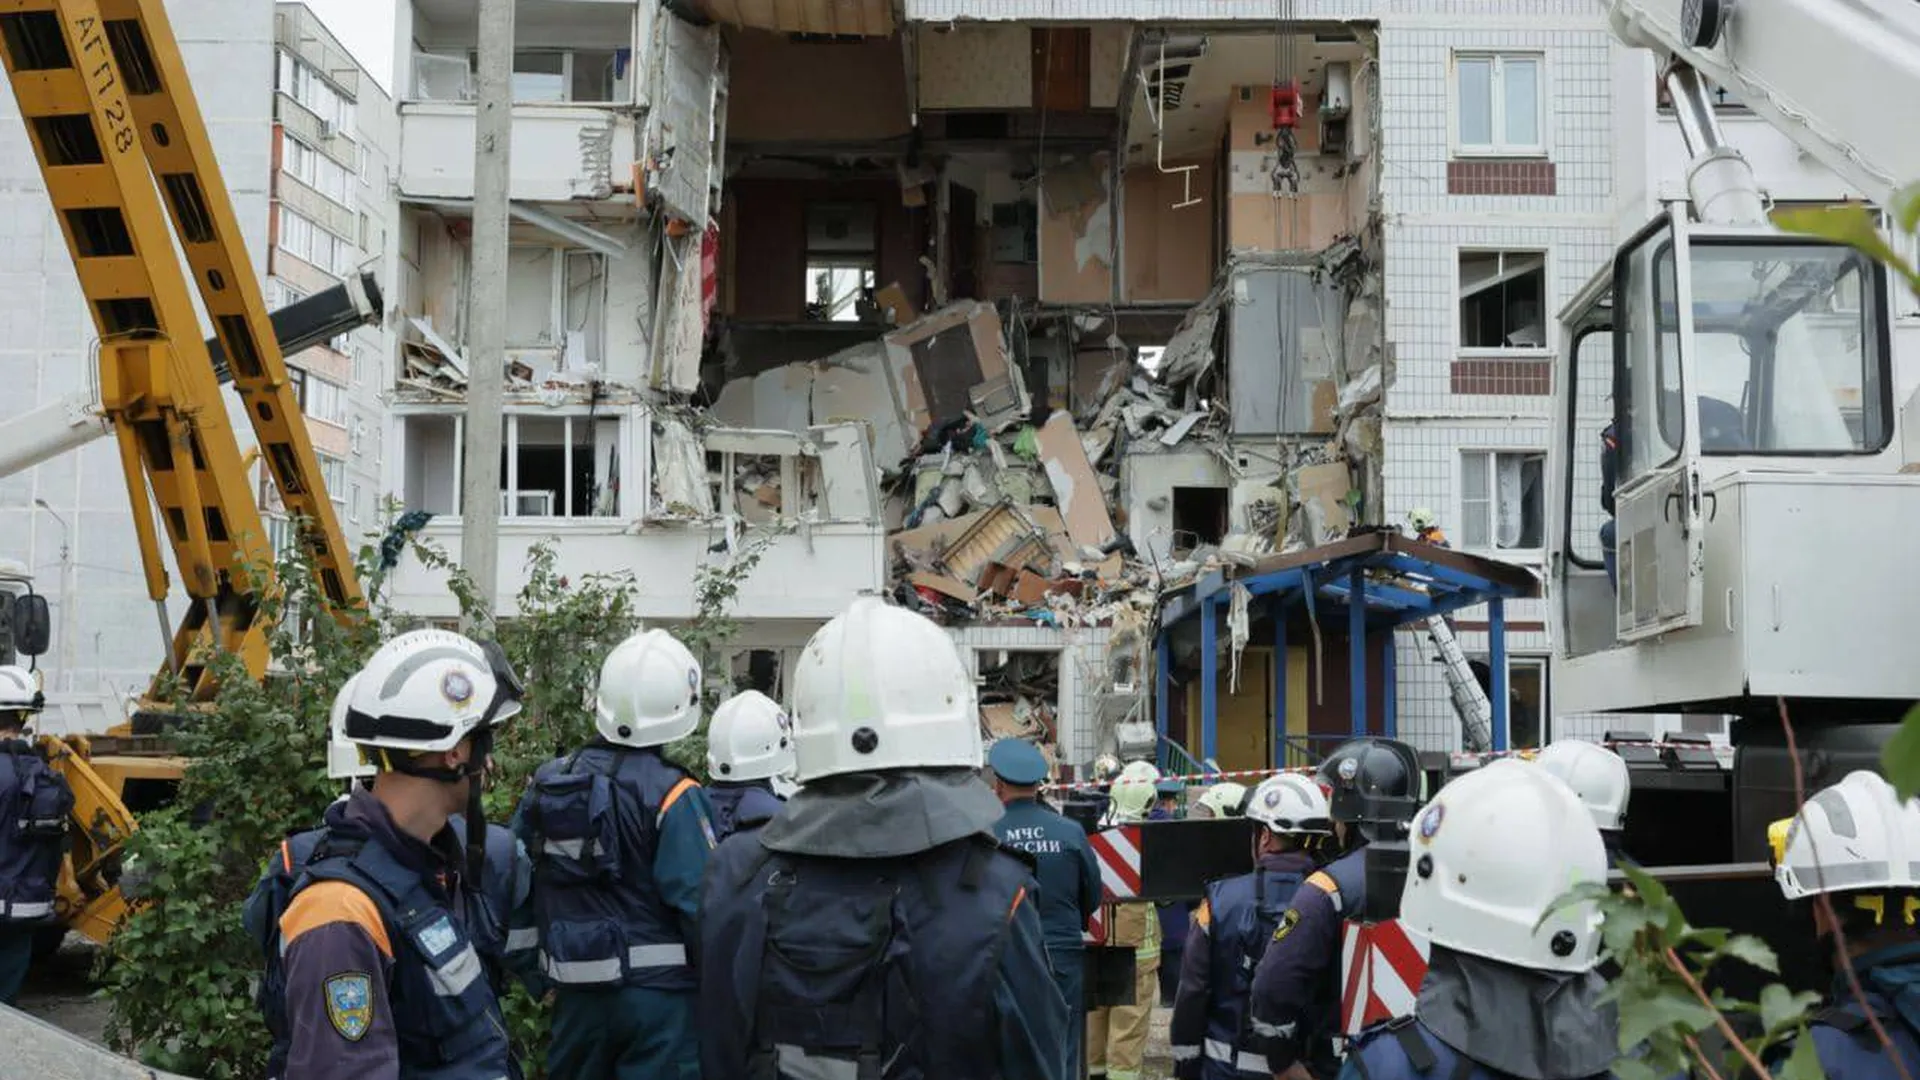 Разбор части разрушенного взрывом дома продолжился в Ногинске. Прямая трансляция